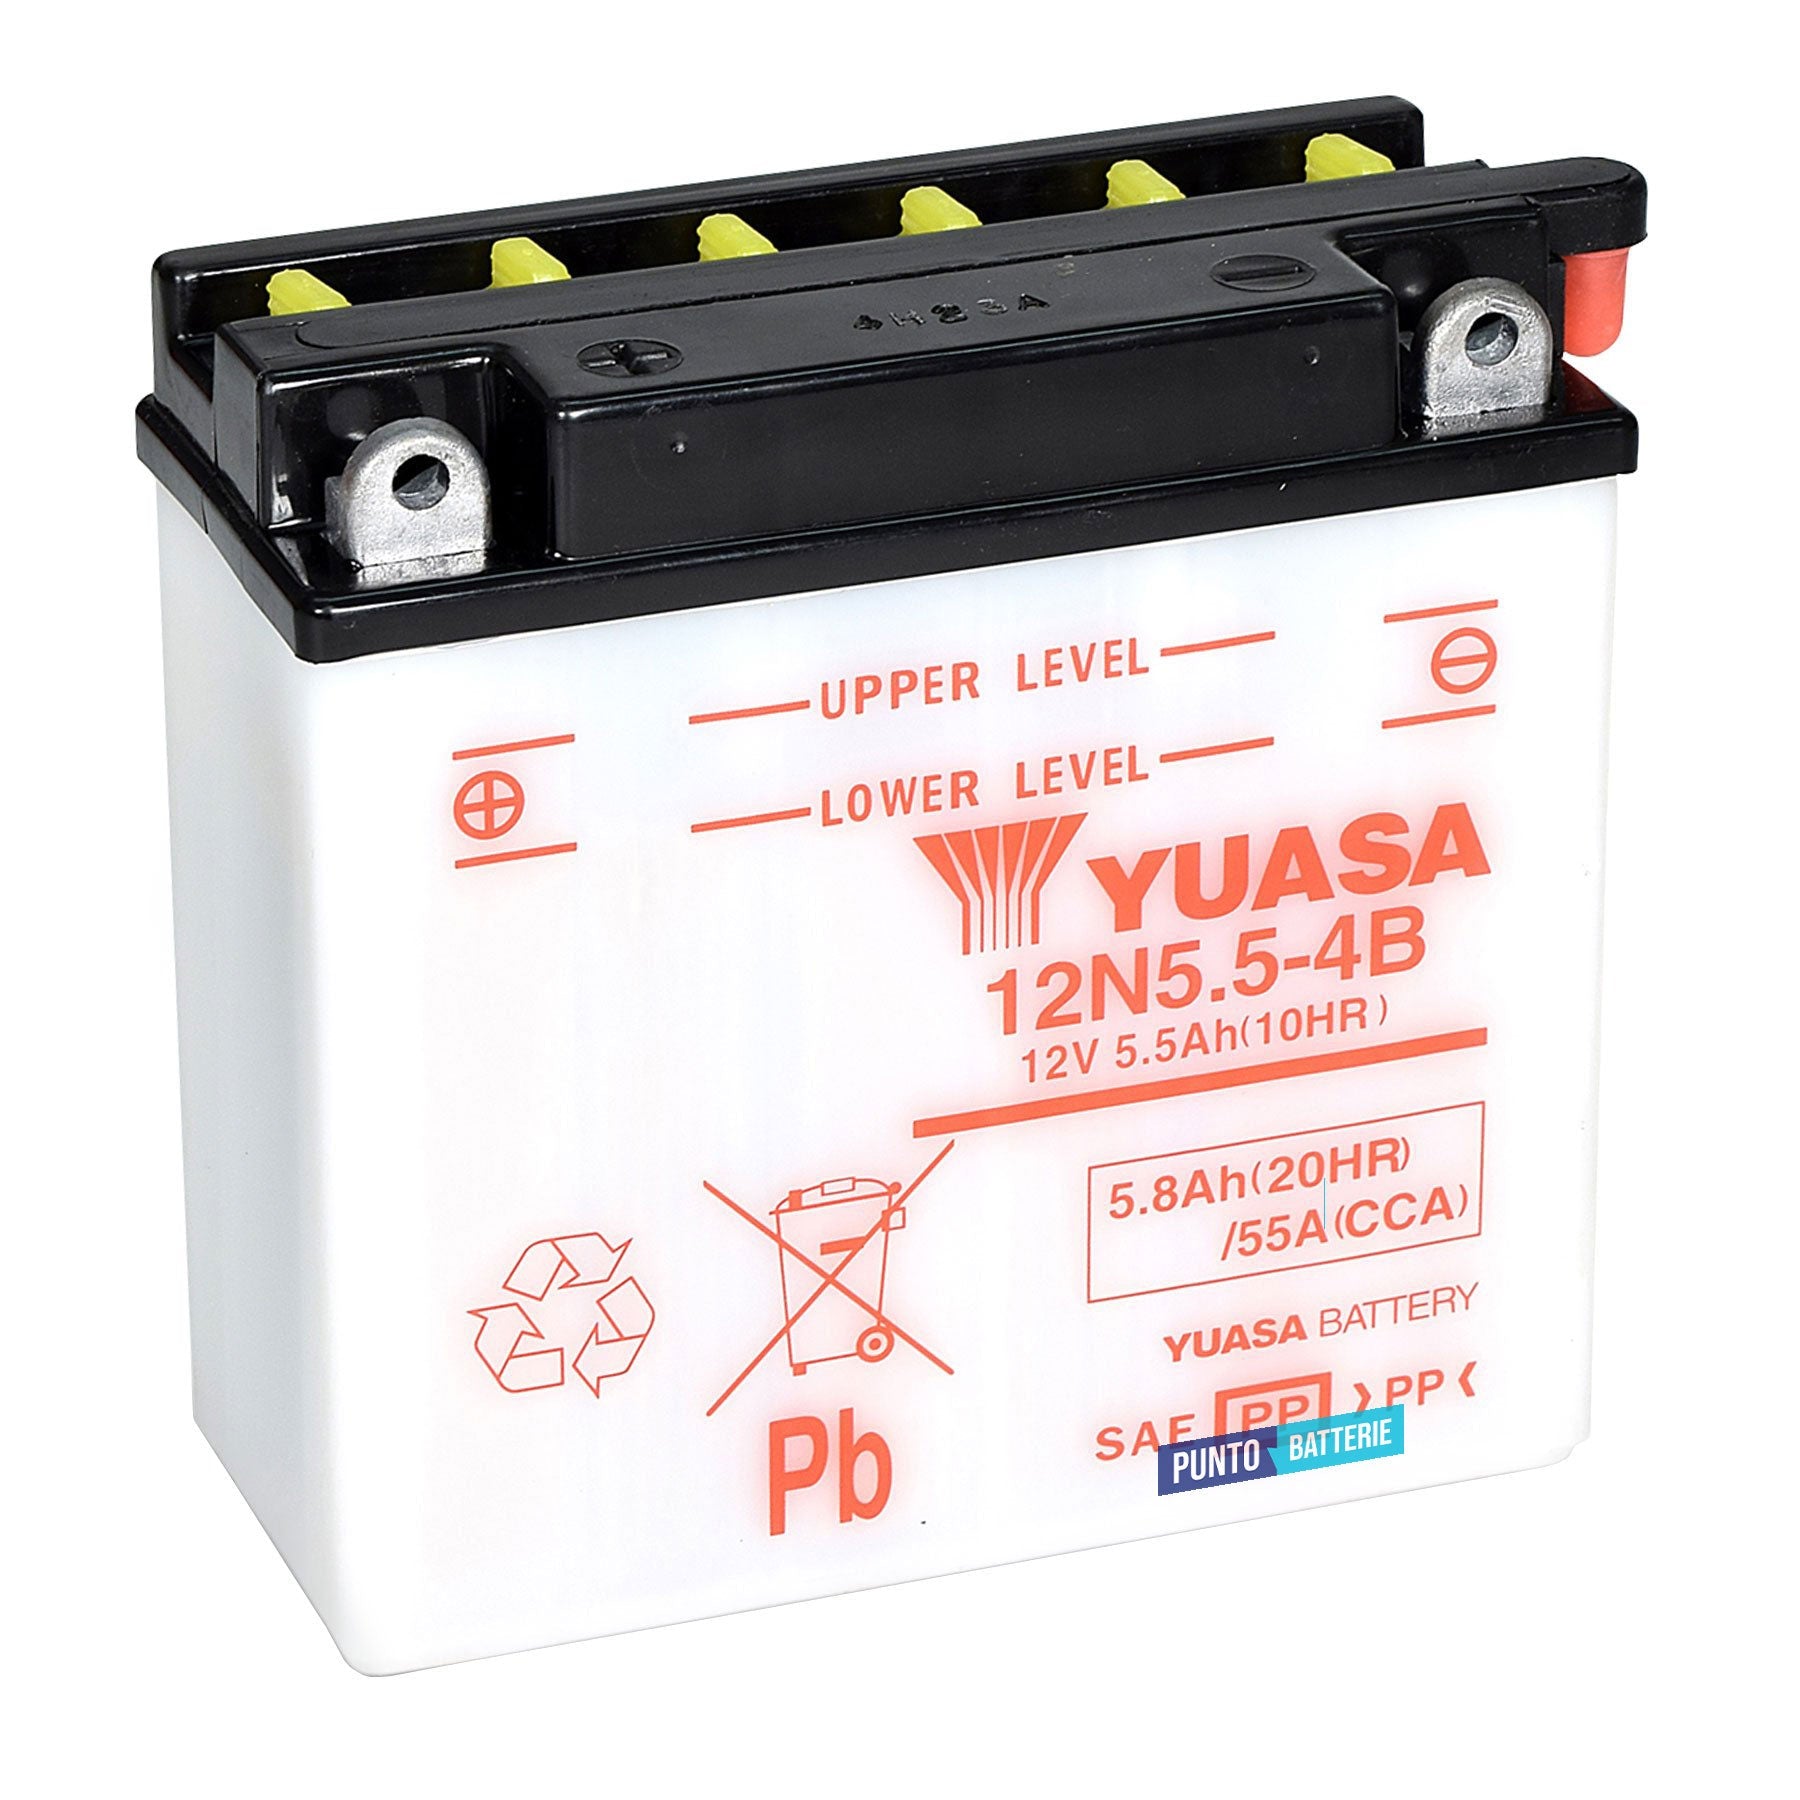 Batteria originale Yuasa Conventional 12N5-5-4B, dimensioni 137 x 61 x 131, polo positivo a sinistra, 12 volt, 5 amperora, 55 ampere. Batteria per moto, scooter e powersport.